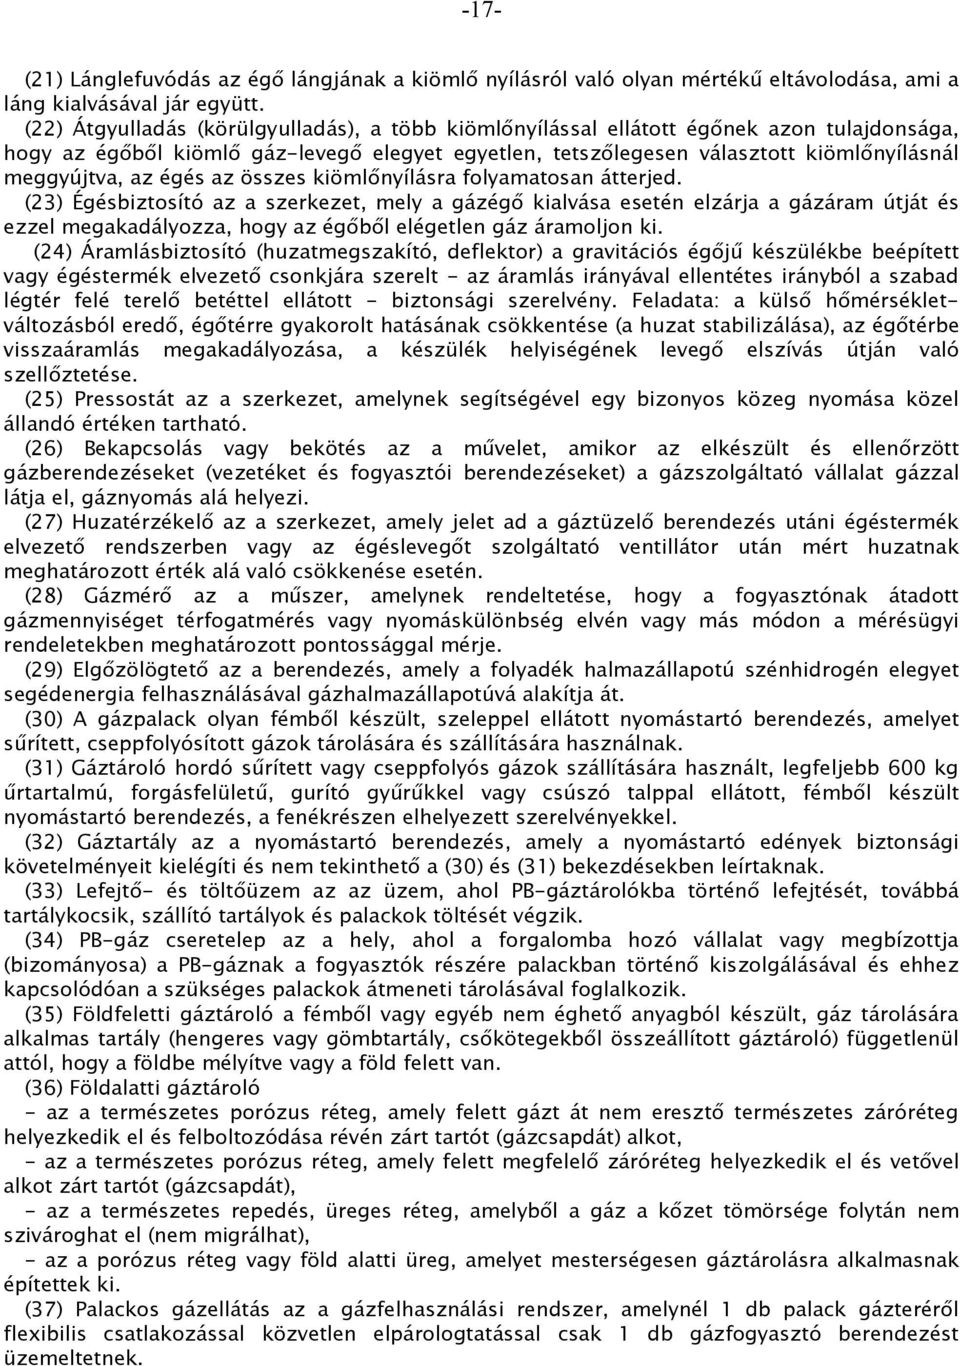 1/1977. (IV. 6.) NIM rendelet. a gázenergiáról szóló évi VII. törvény  végrehajtásáról - PDF Free Download